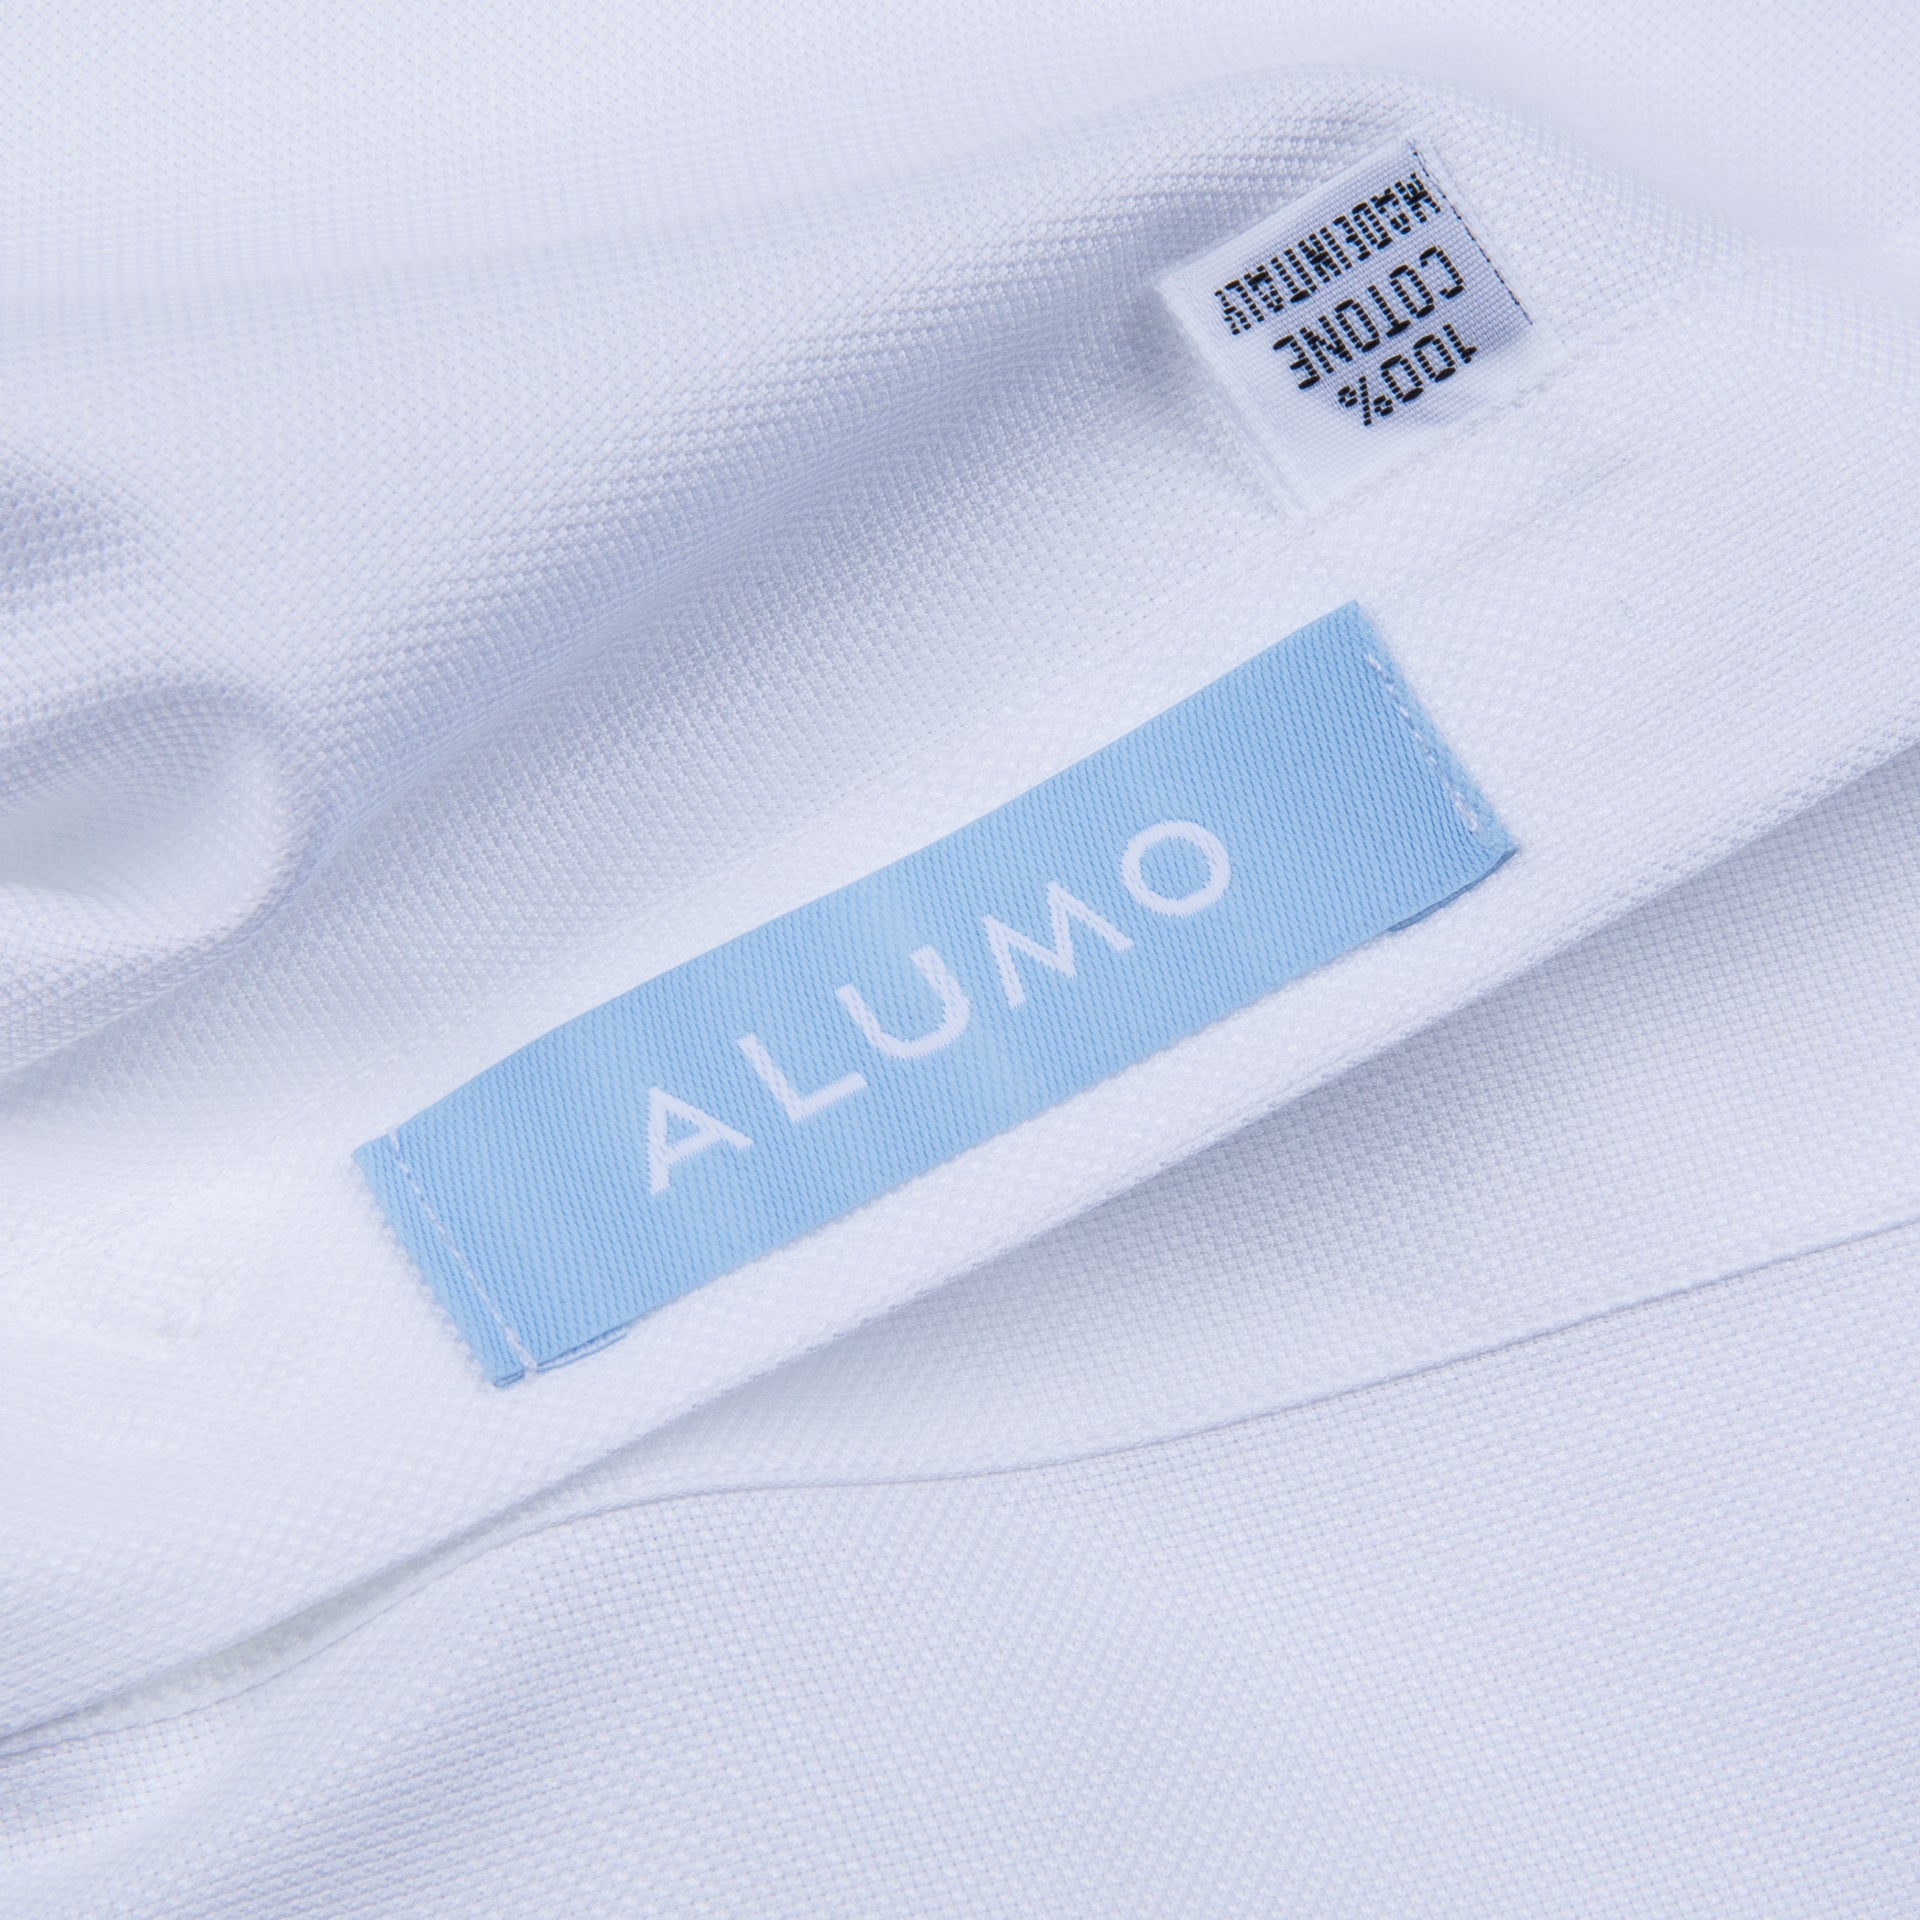 Finamore Milano shirt Eduardo collar Alumo Castello oxford white